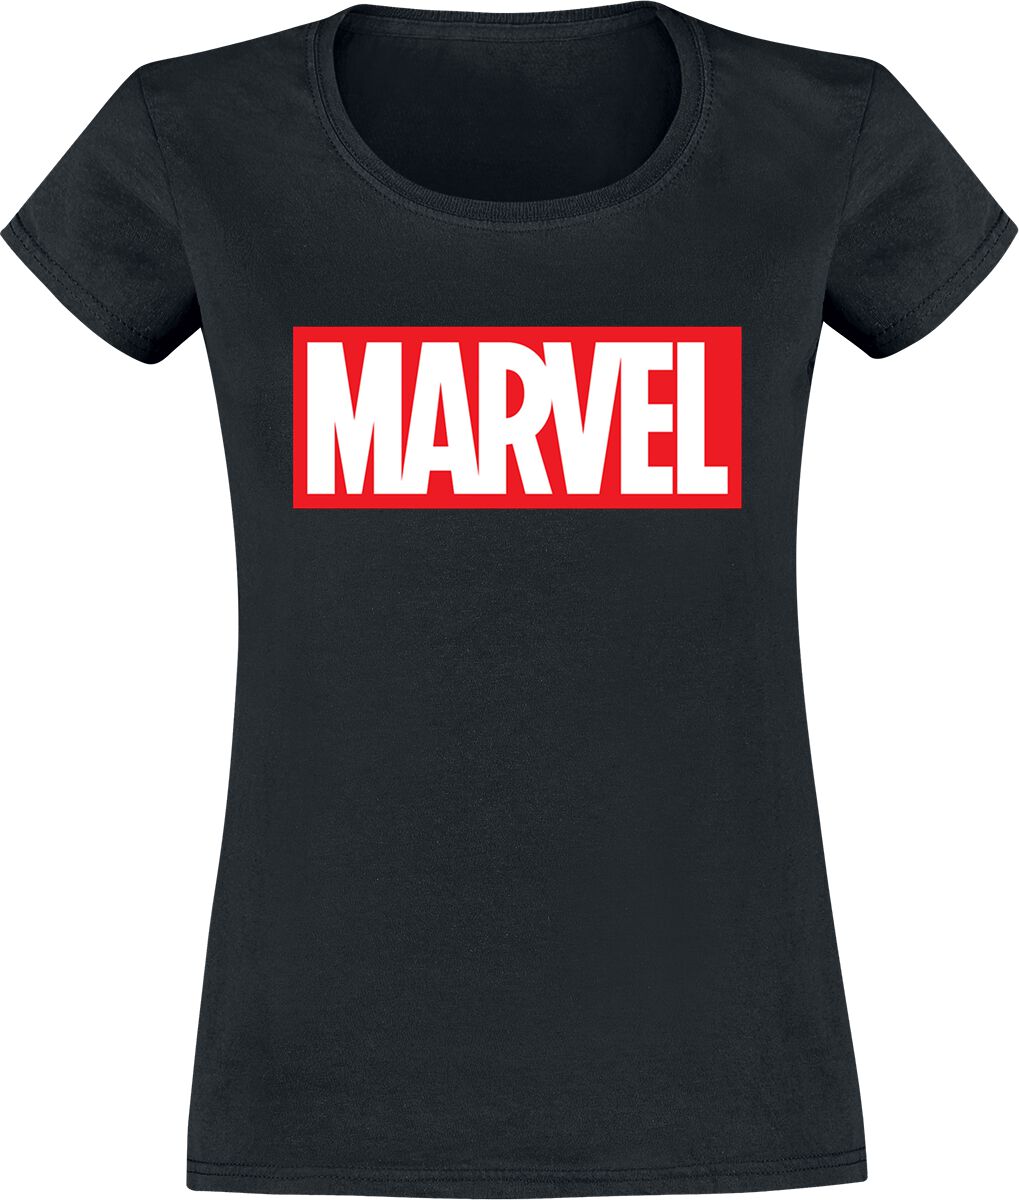 Marvel - Marvel T-Shirt - Logo - XS bis XXL - für Damen - Größe XXL - schwarz  - EMP exklusives Merchandise!